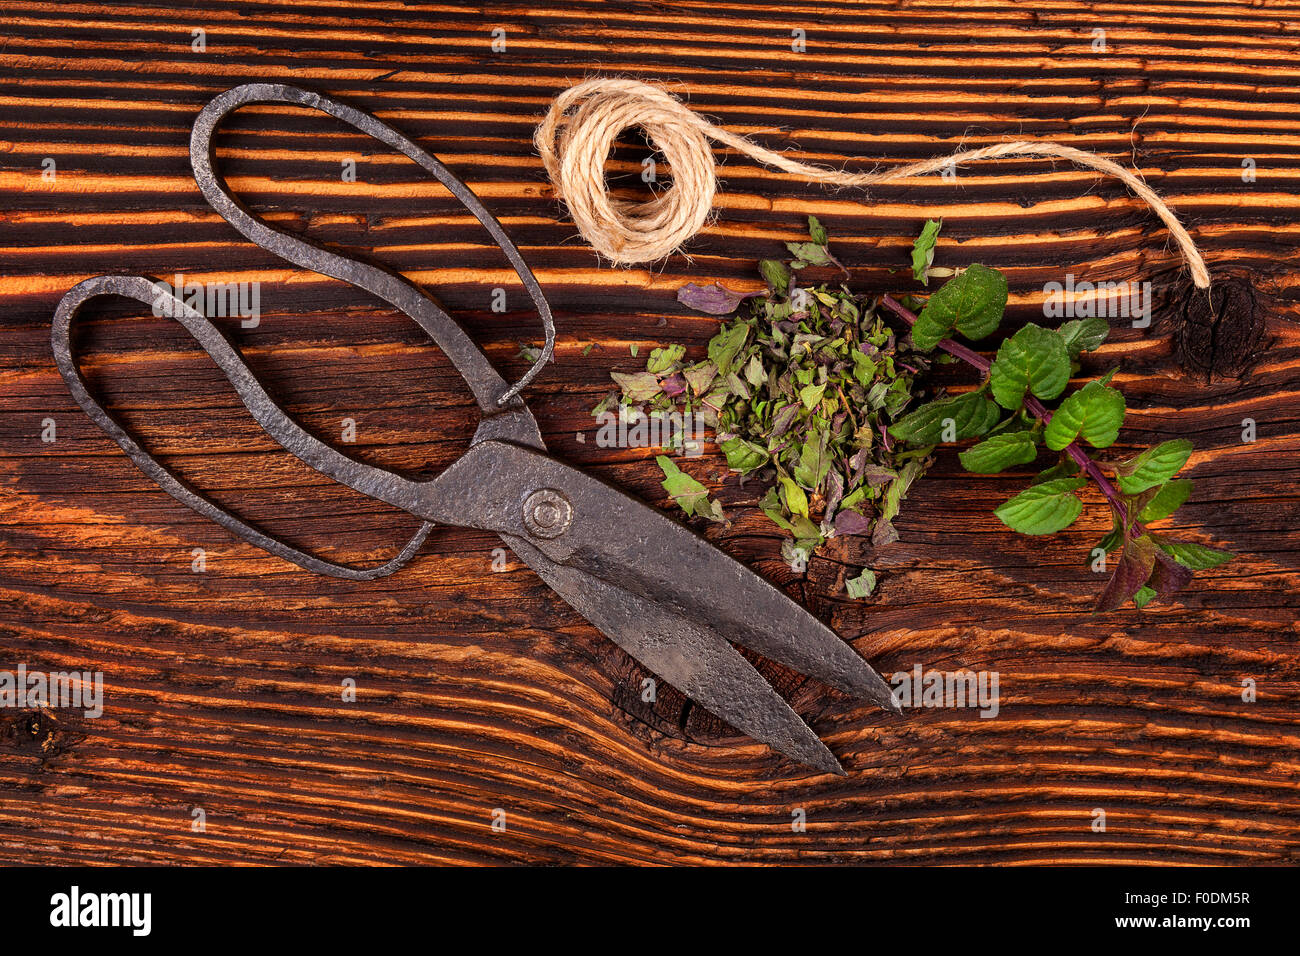 Aromatische Küchenkräuter, frische und getrocknete Minze Kräuter auf hölzernen rustikalen Hintergrund mit alten Vintage Scheren. Stockfoto